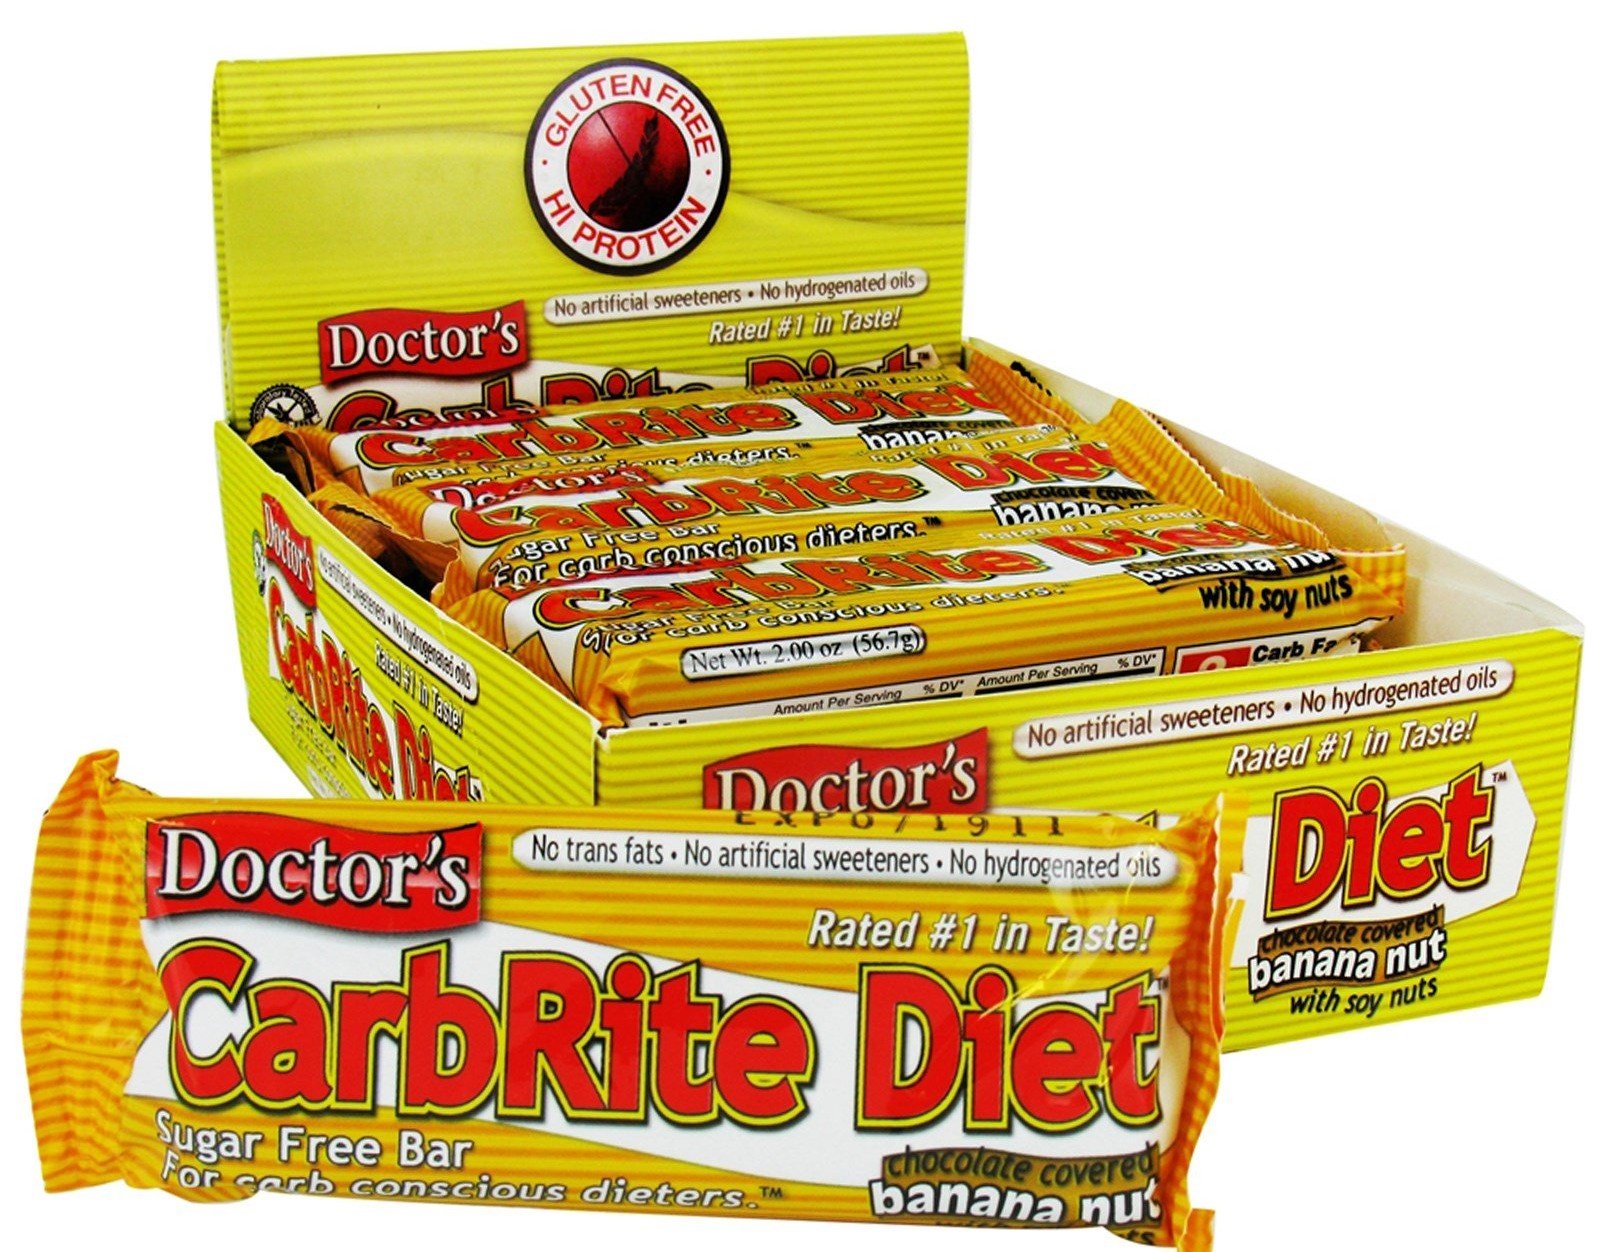 CarbRite Diet, 12 piezas, Universal Nutrition. Bares. 